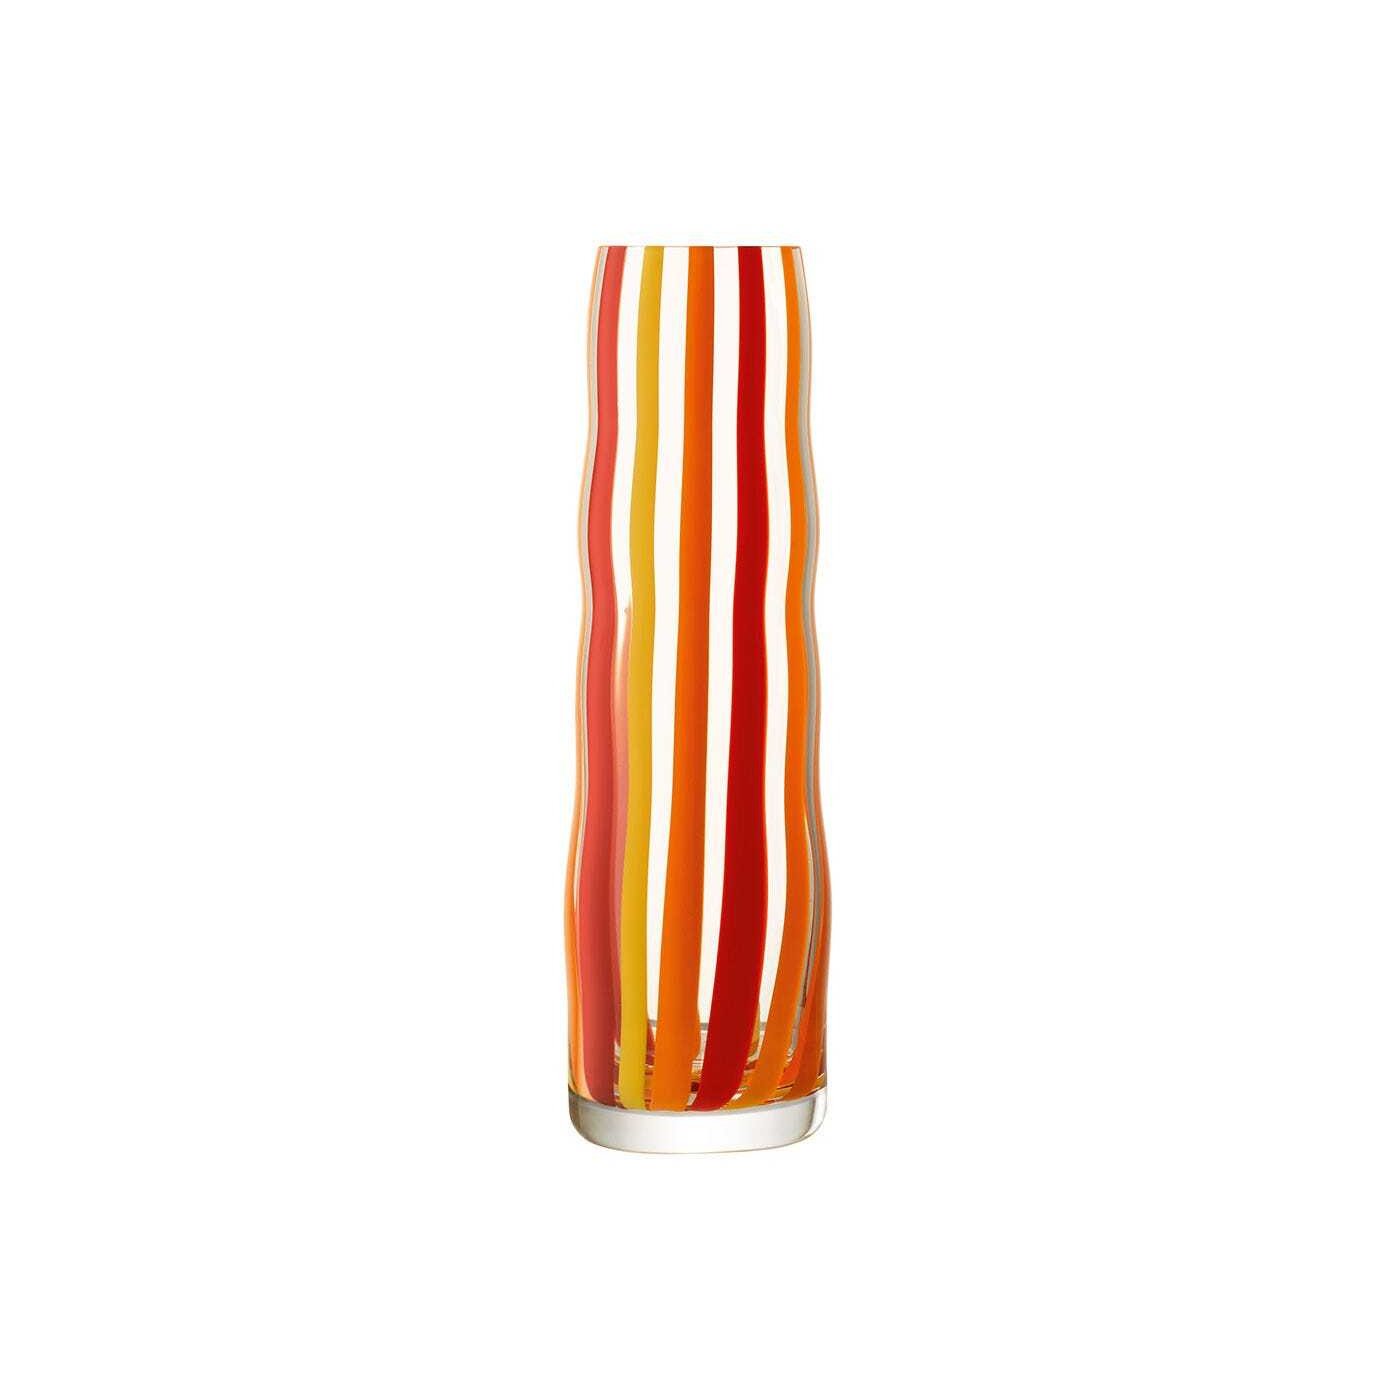 LSA International Folk Vase H31.5cm Orange, Red & Yellow - image 1